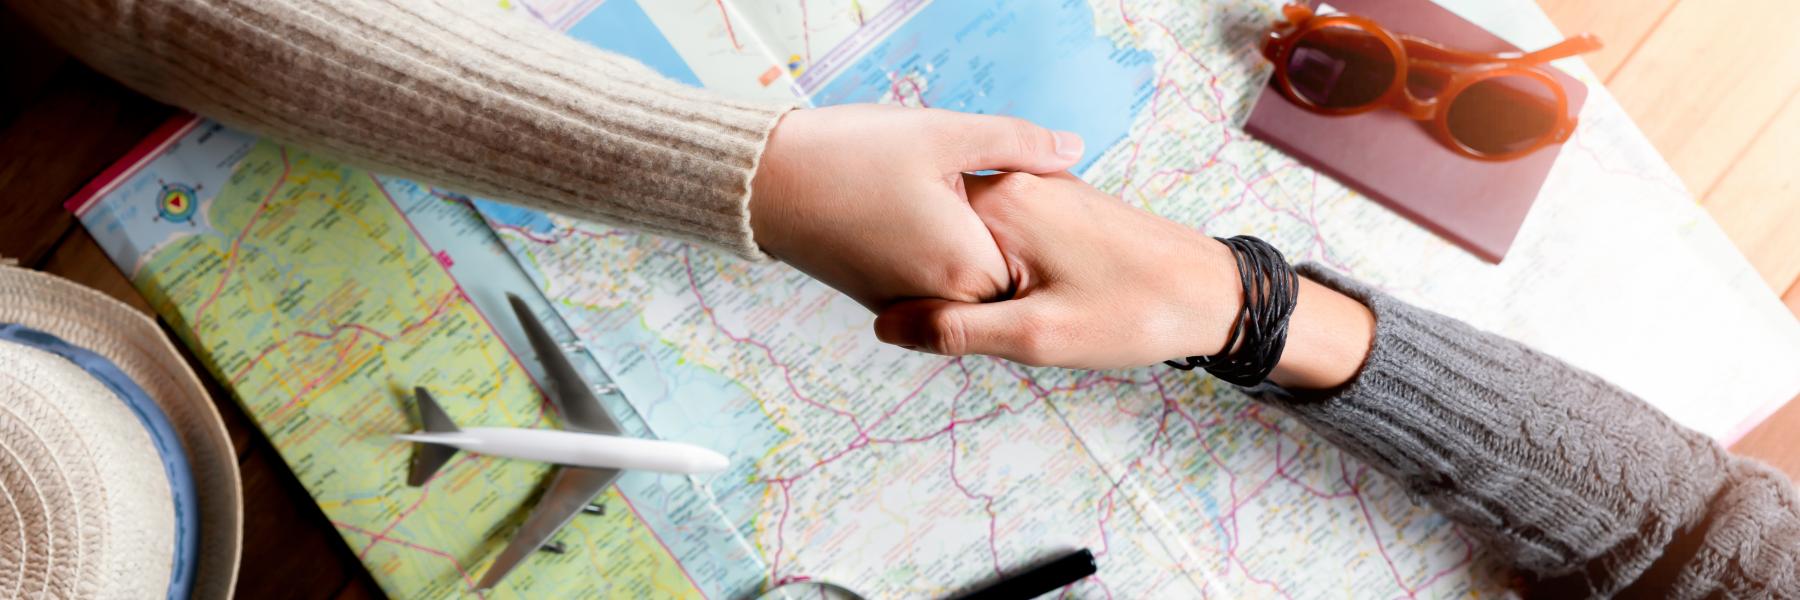 6 طرق تساعد على إشباع رغبة السفر الخاصة بك عندما لا تستطيع مغادرة منزلك